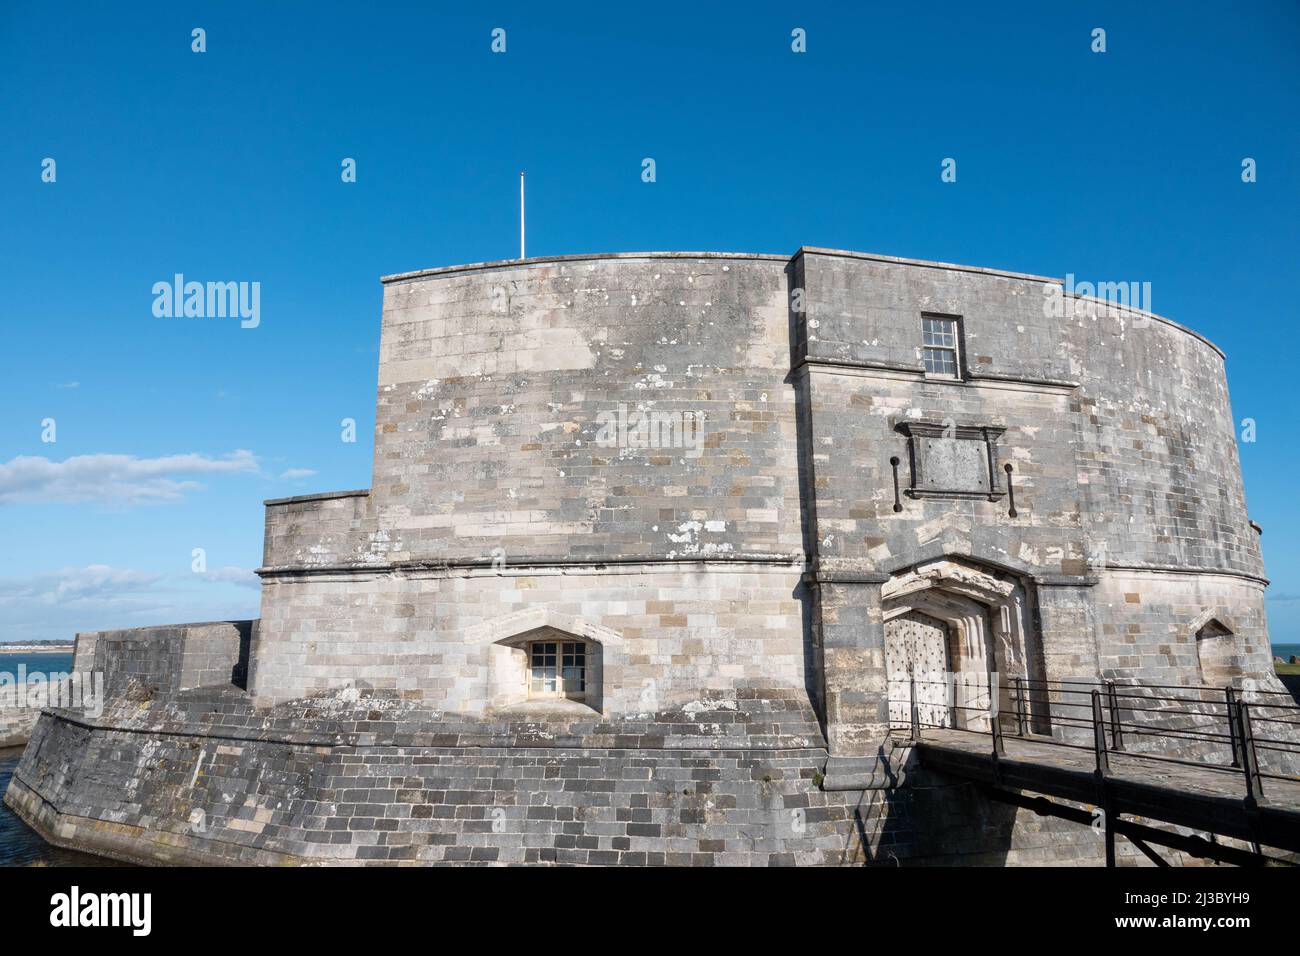 Le château de CalShot est un fort d'artillerie construit par Henry VIII sur le Calshot Spit Hampshire Angleterre Banque D'Images